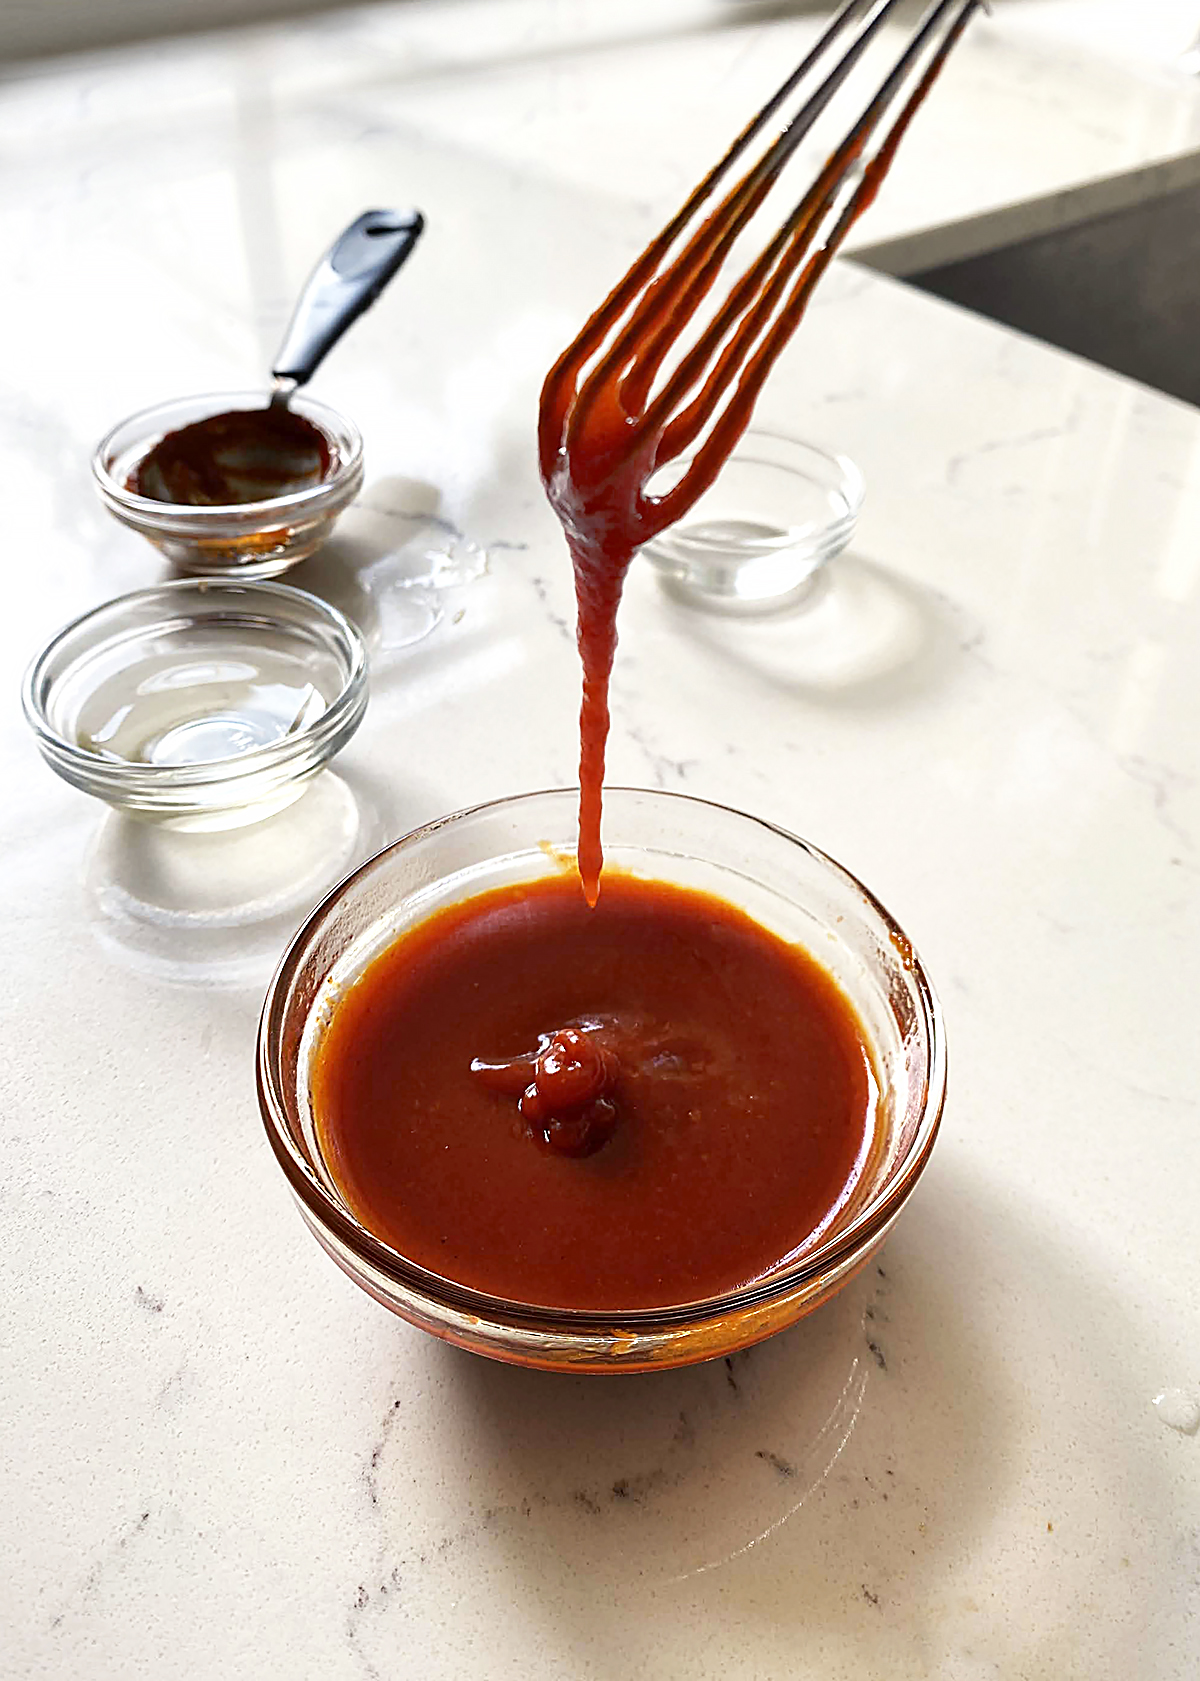 bibimbap sauce, mixed to show consistency and texture